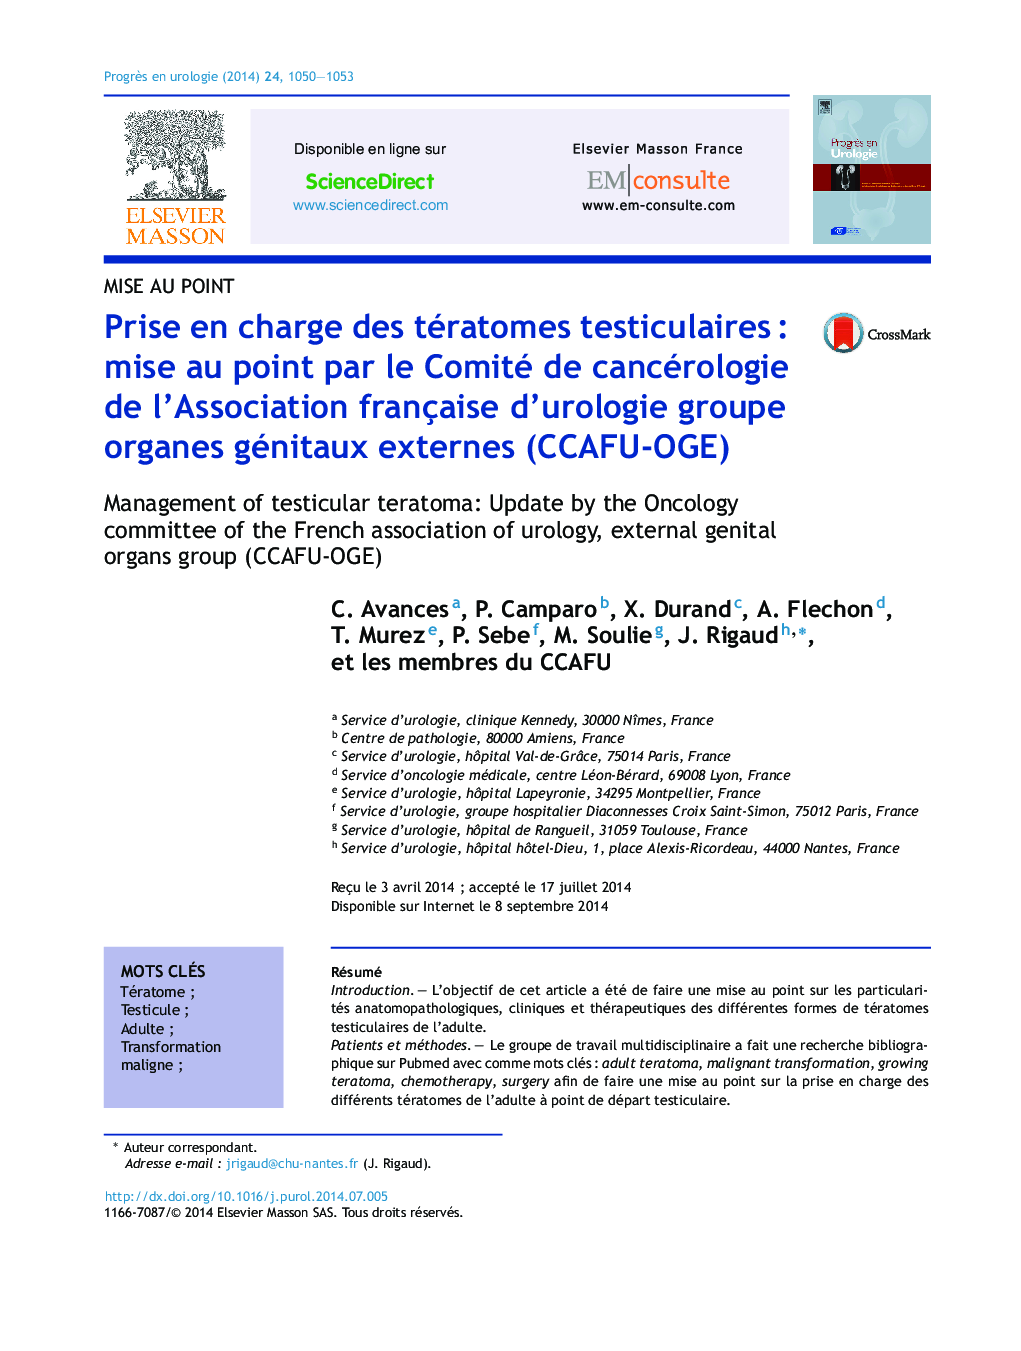 Prise en charge des tératomes testiculairesÂ : mise au point par le Comité de cancérologie de l'Association française d'urologie groupe organes génitaux externes (CCAFU-OGE)